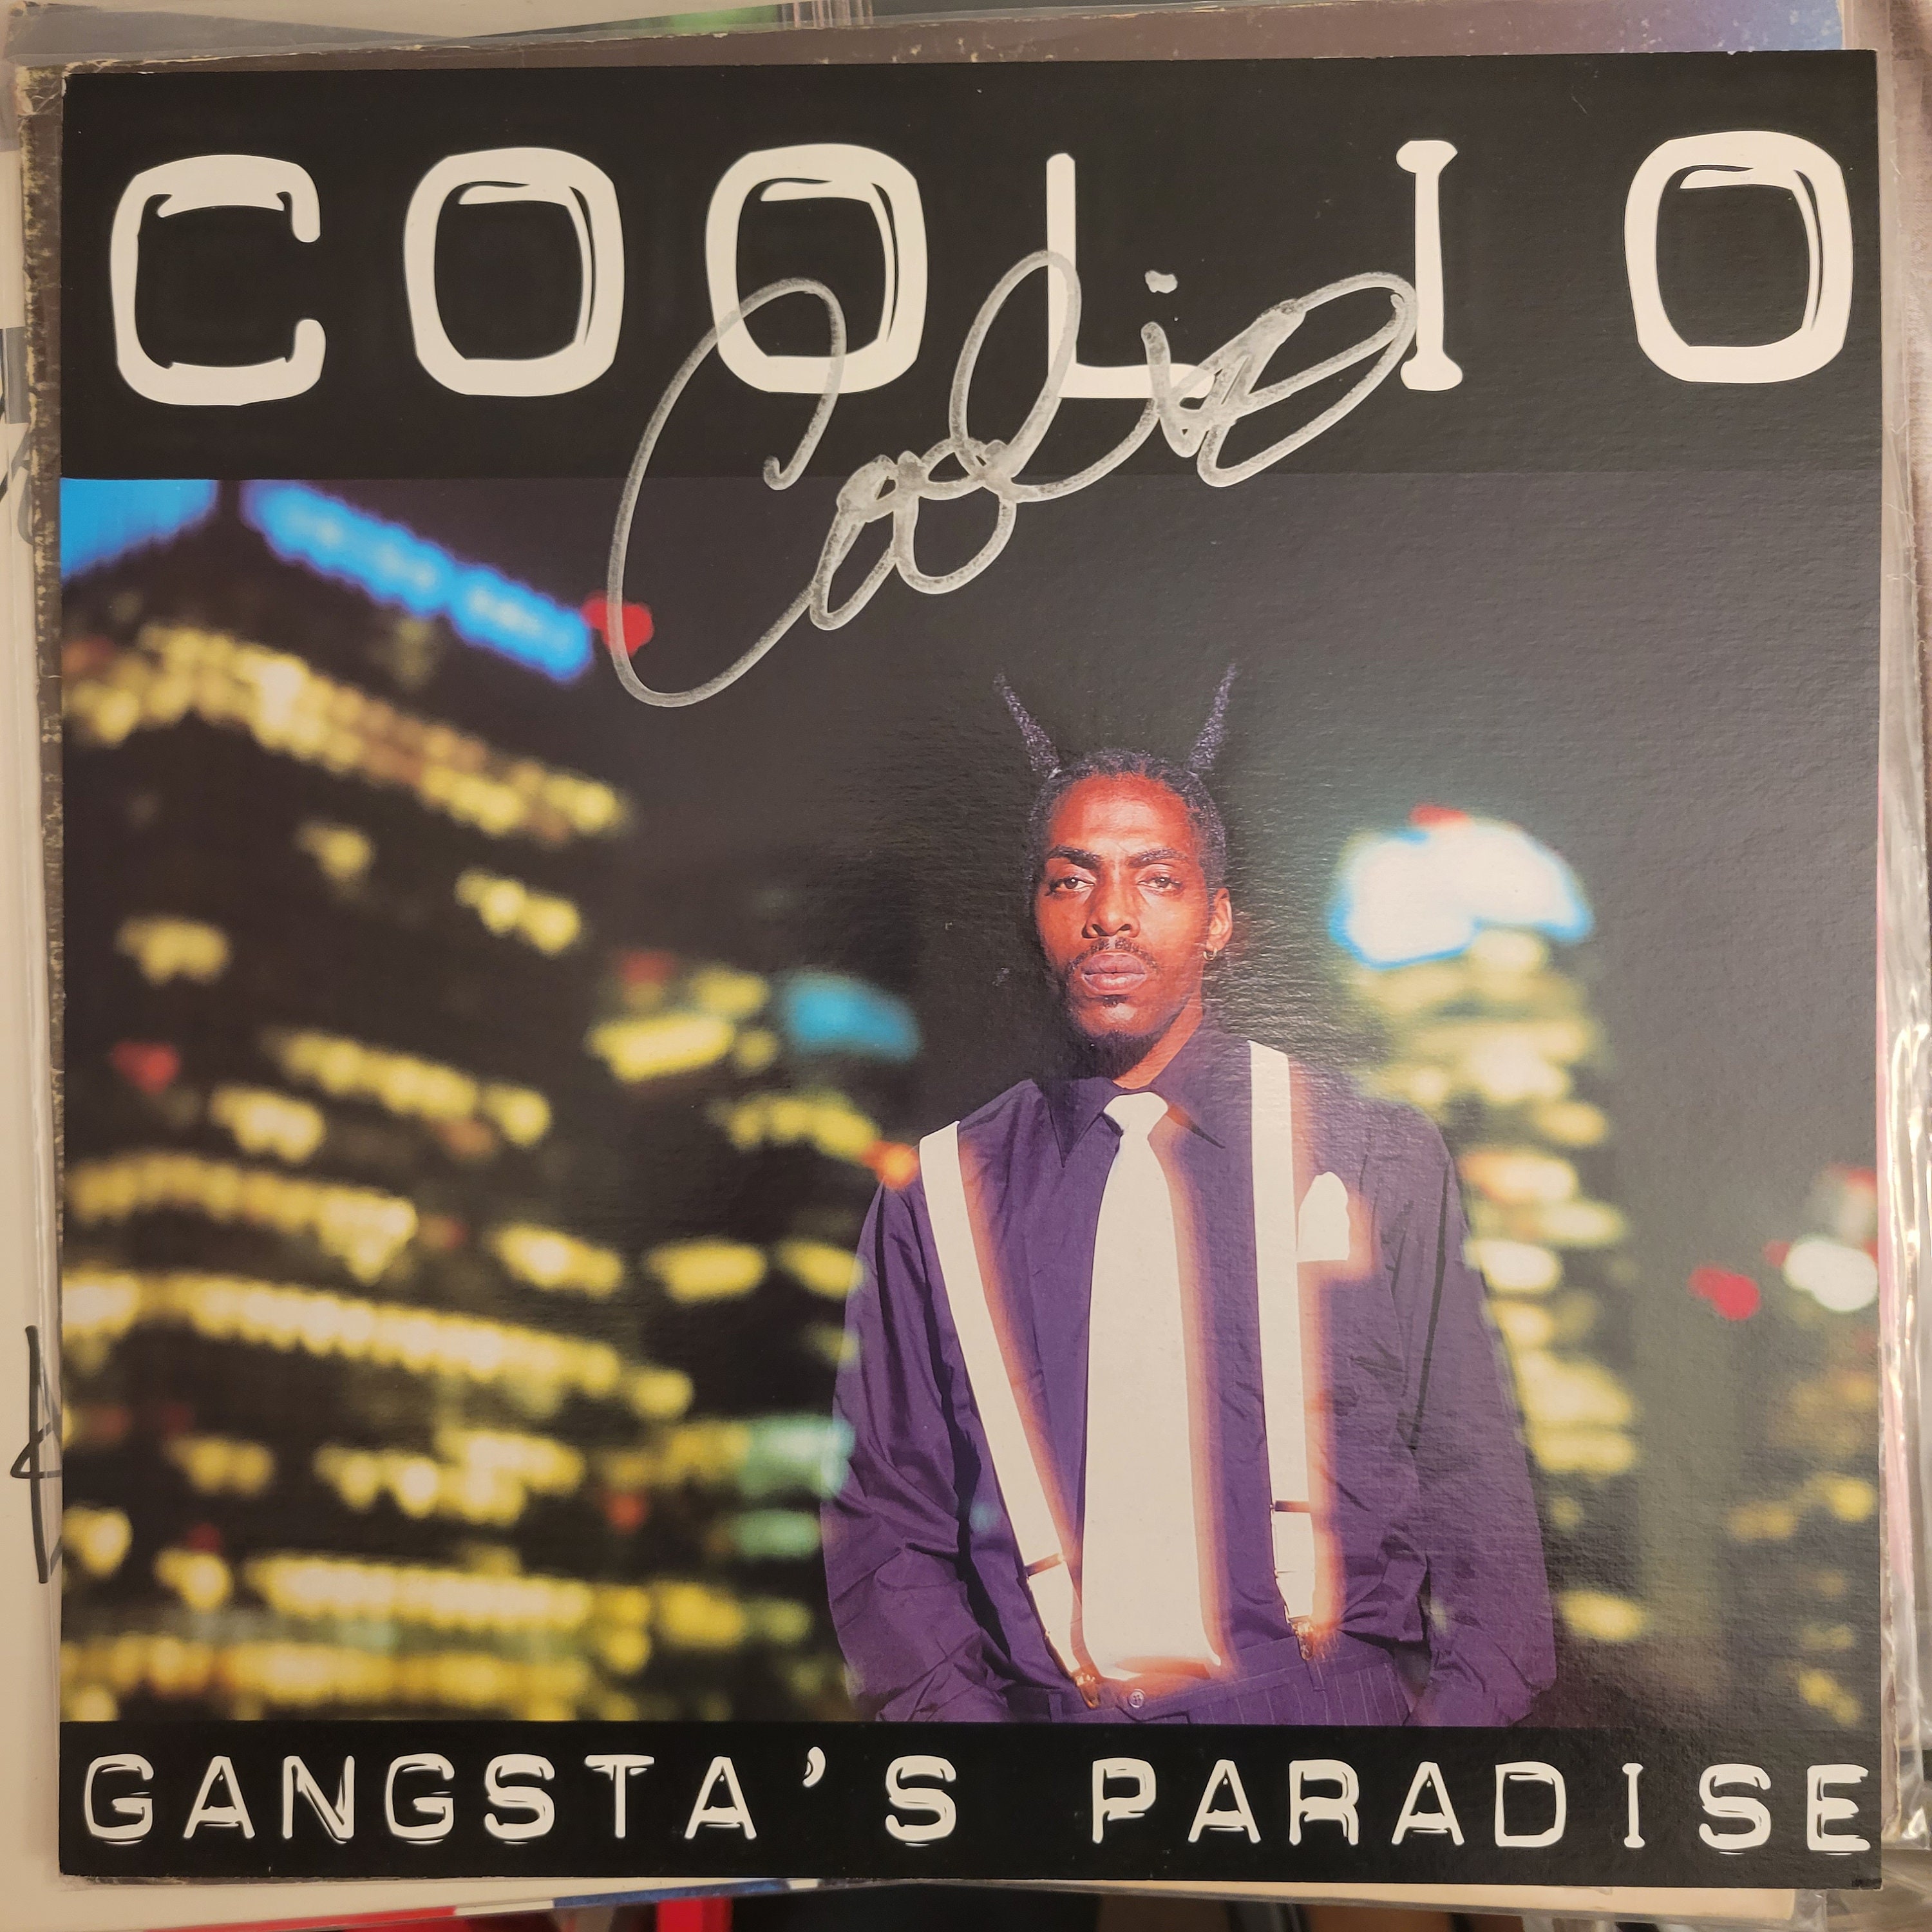 Gangsta's Paradise, Coolio